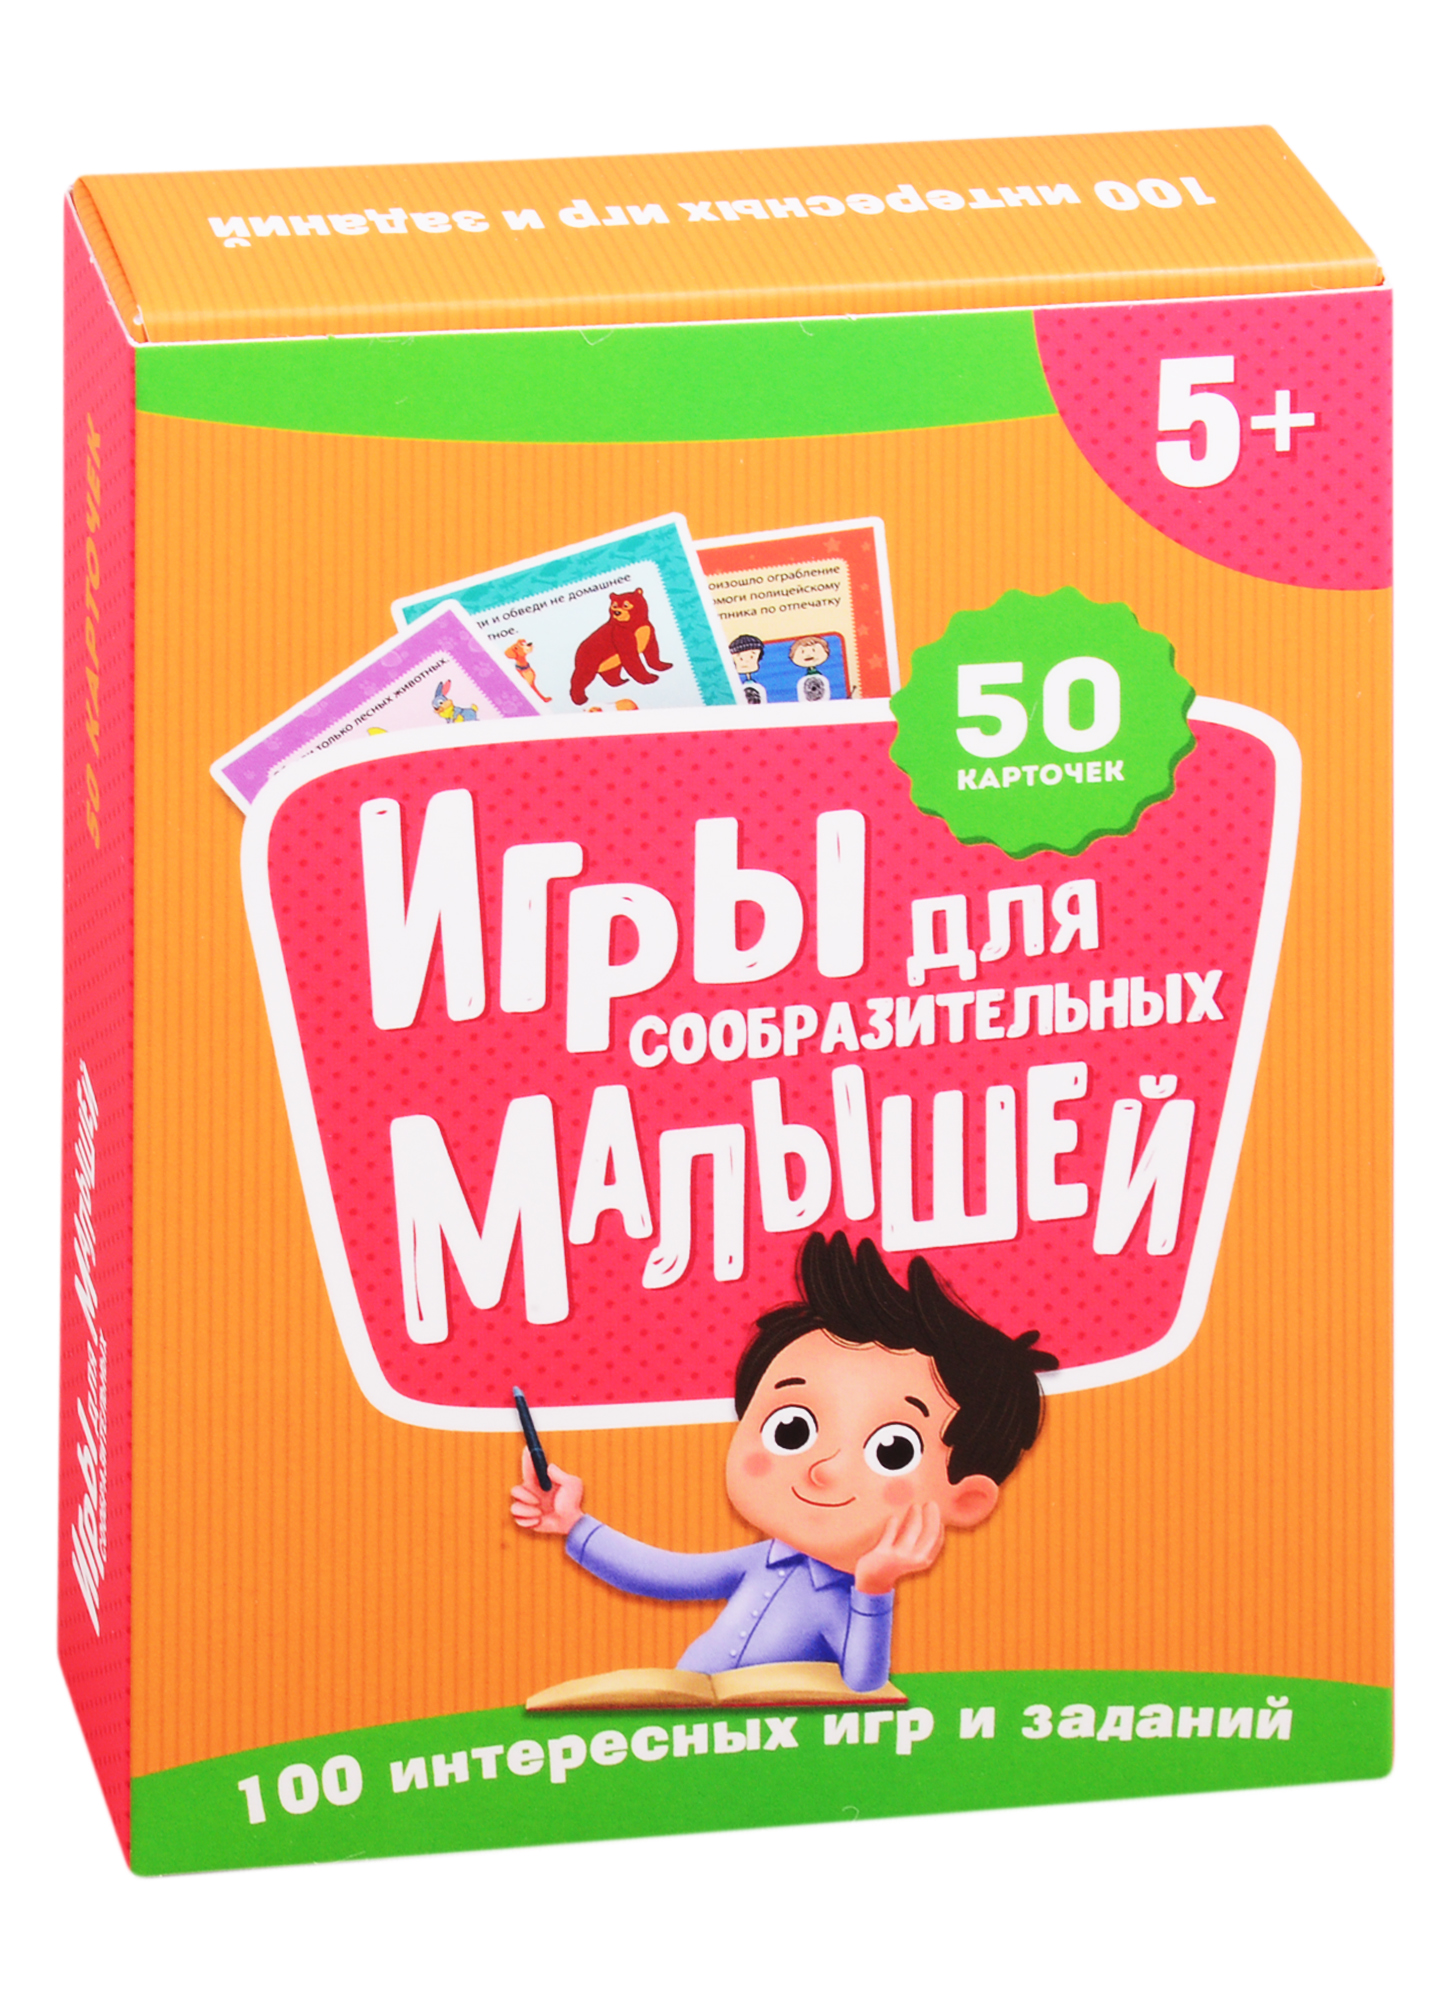 Игры для сообразительных малышей. 50 карточек (5+) игры для сообразительных девчонок